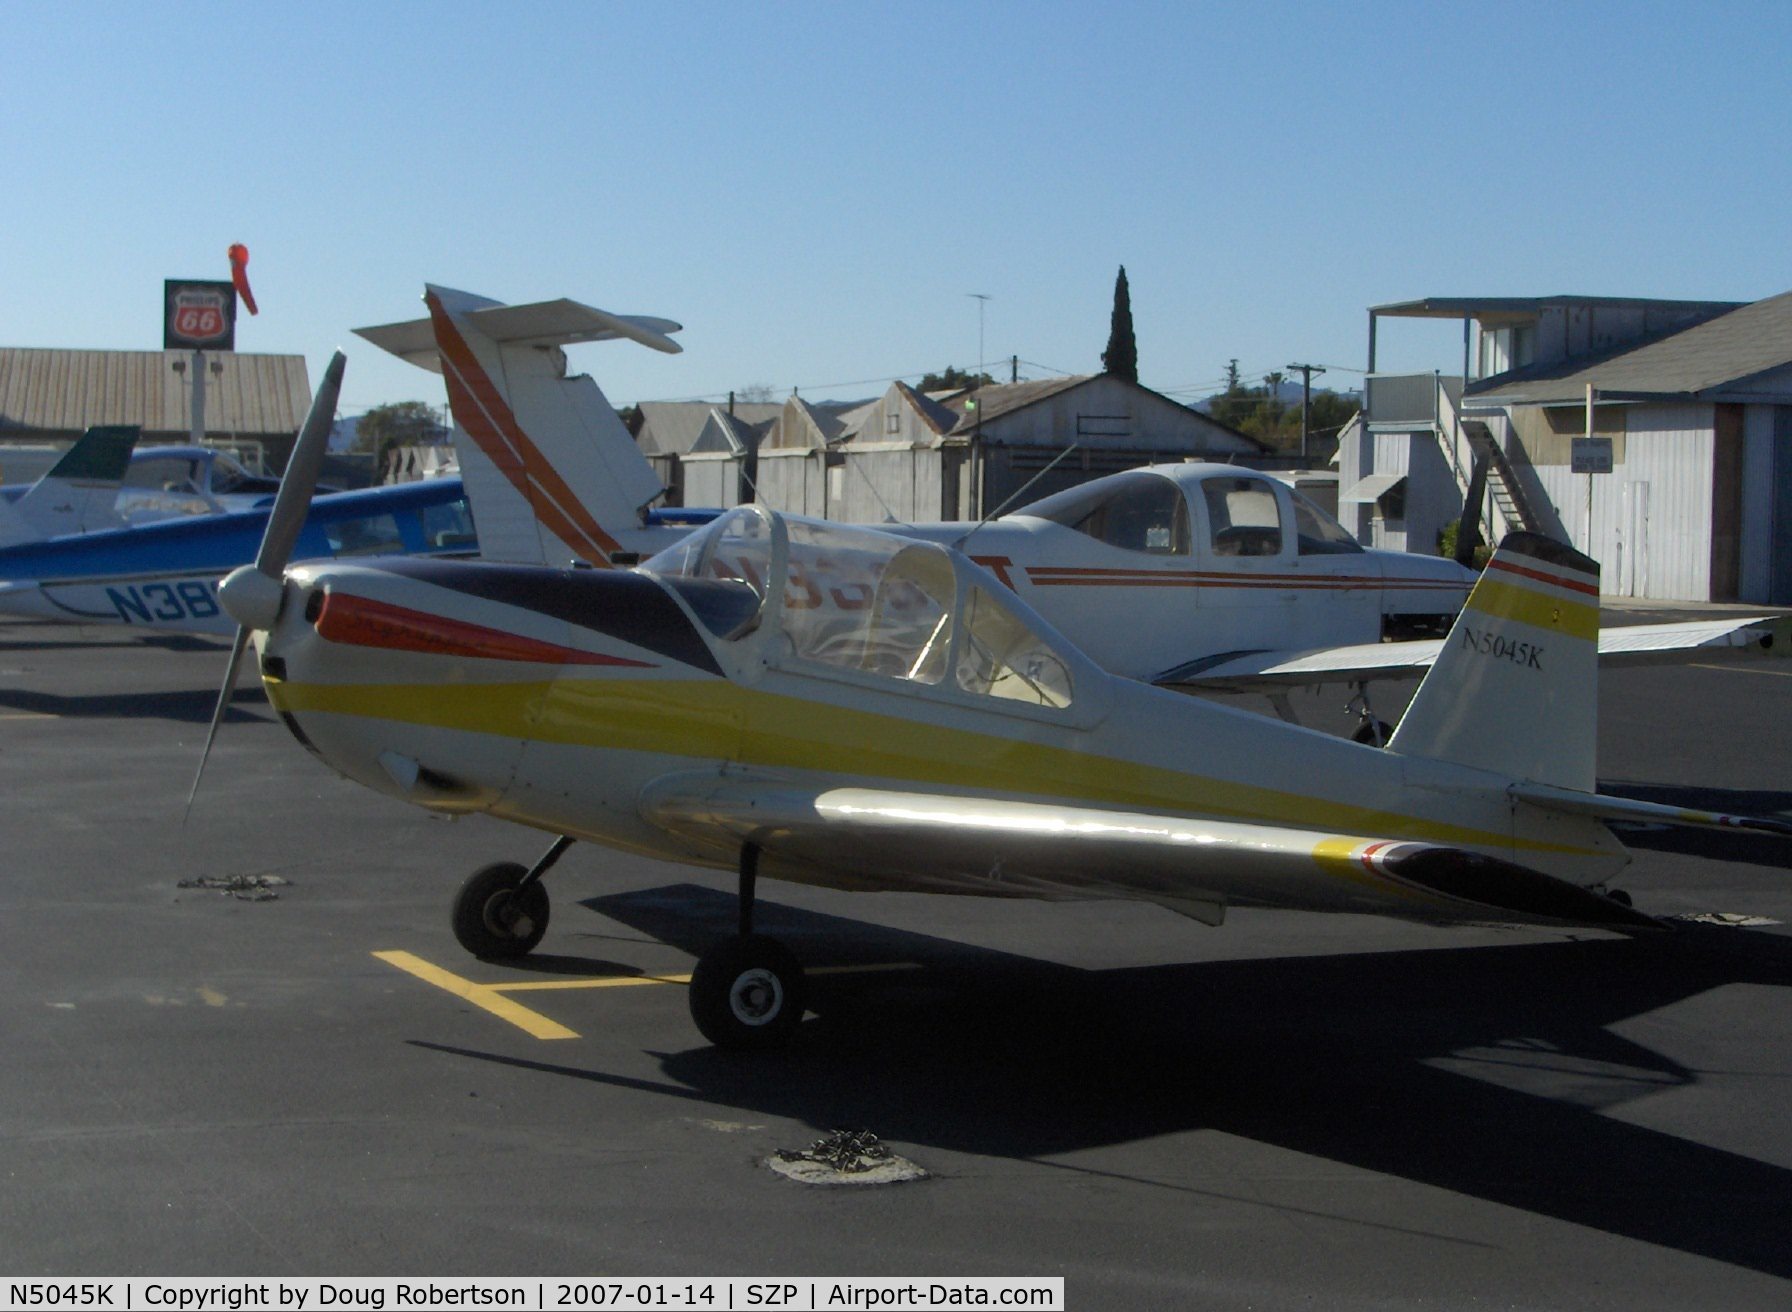 N5045K, Rosenhan SKYHOPPER C/N 1, 1986 Rosenhan Salvay-Stark 'Skyhopper I', Continental O-200 100 Hp